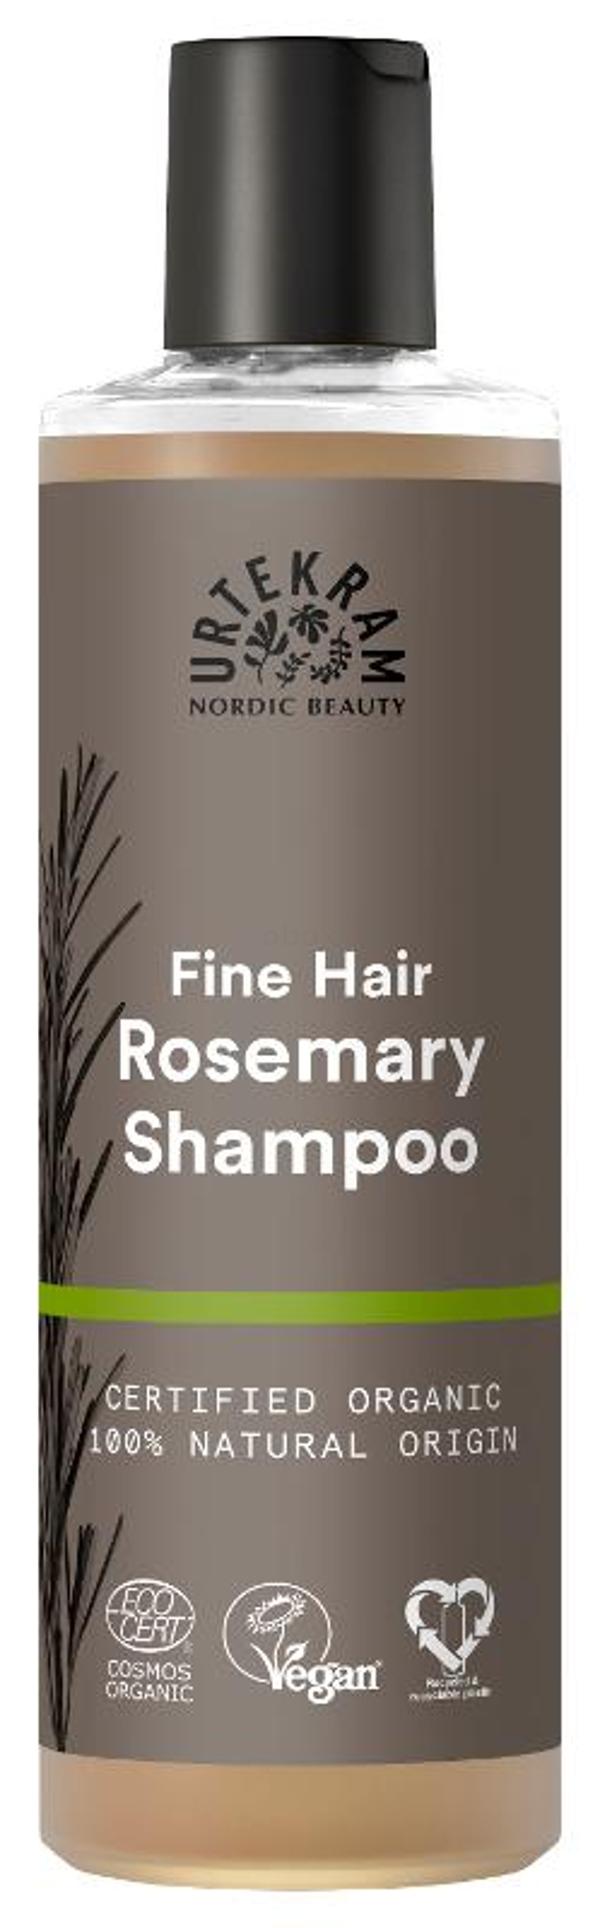 Produktfoto zu Rosmarin Shampoo für feines Haar